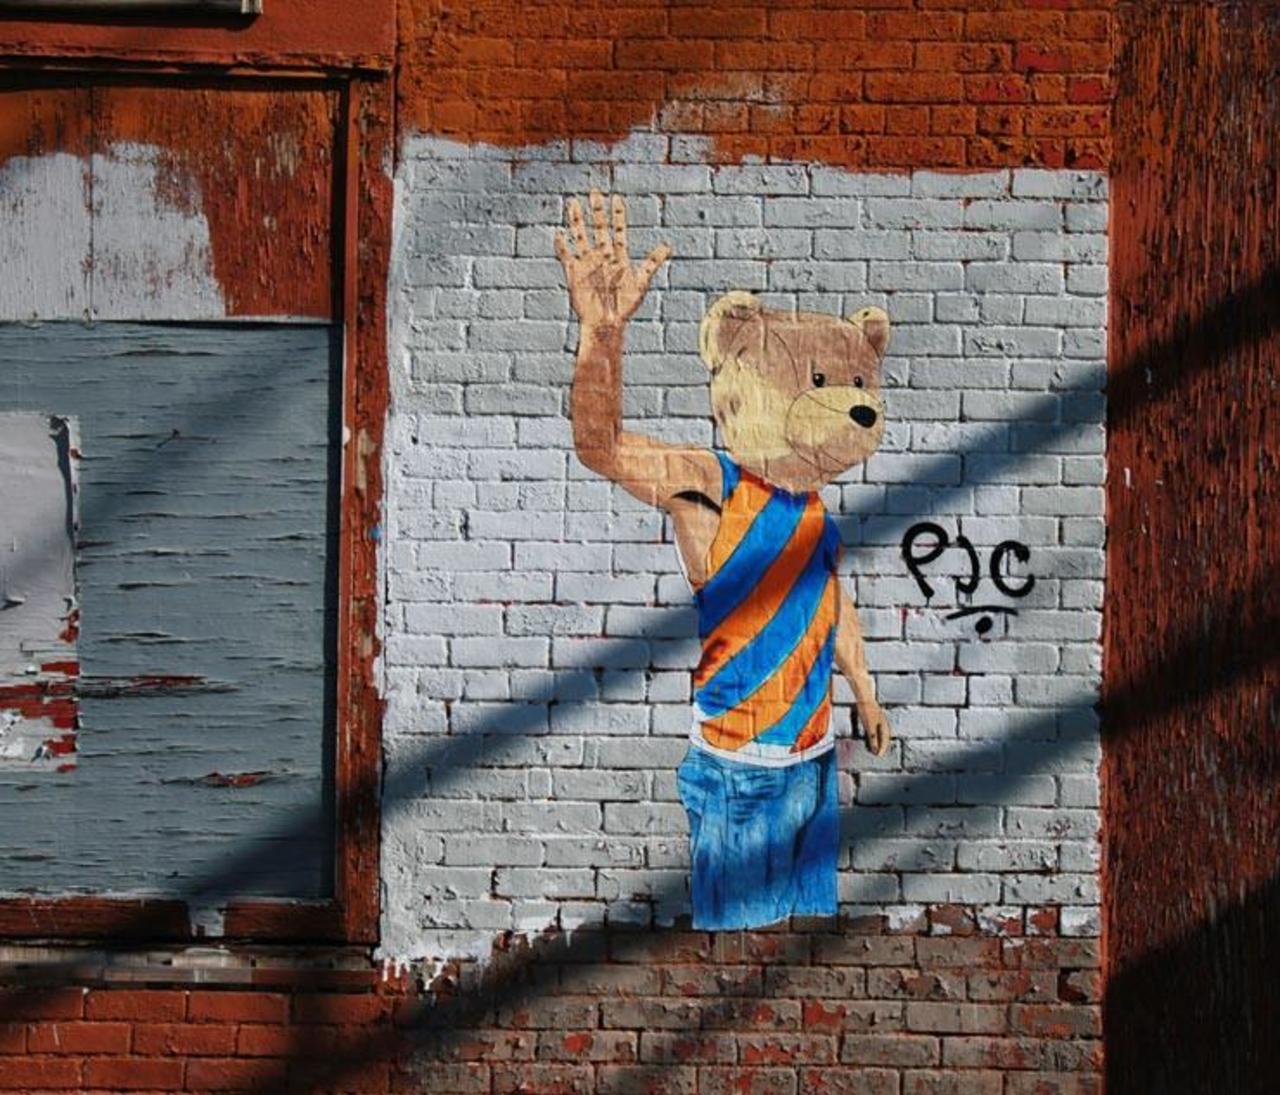 Sean Lugo
Brooklyn Street Art

#streetart #art #graffiti #urbanart http://t.co/WpAT6EwXVr